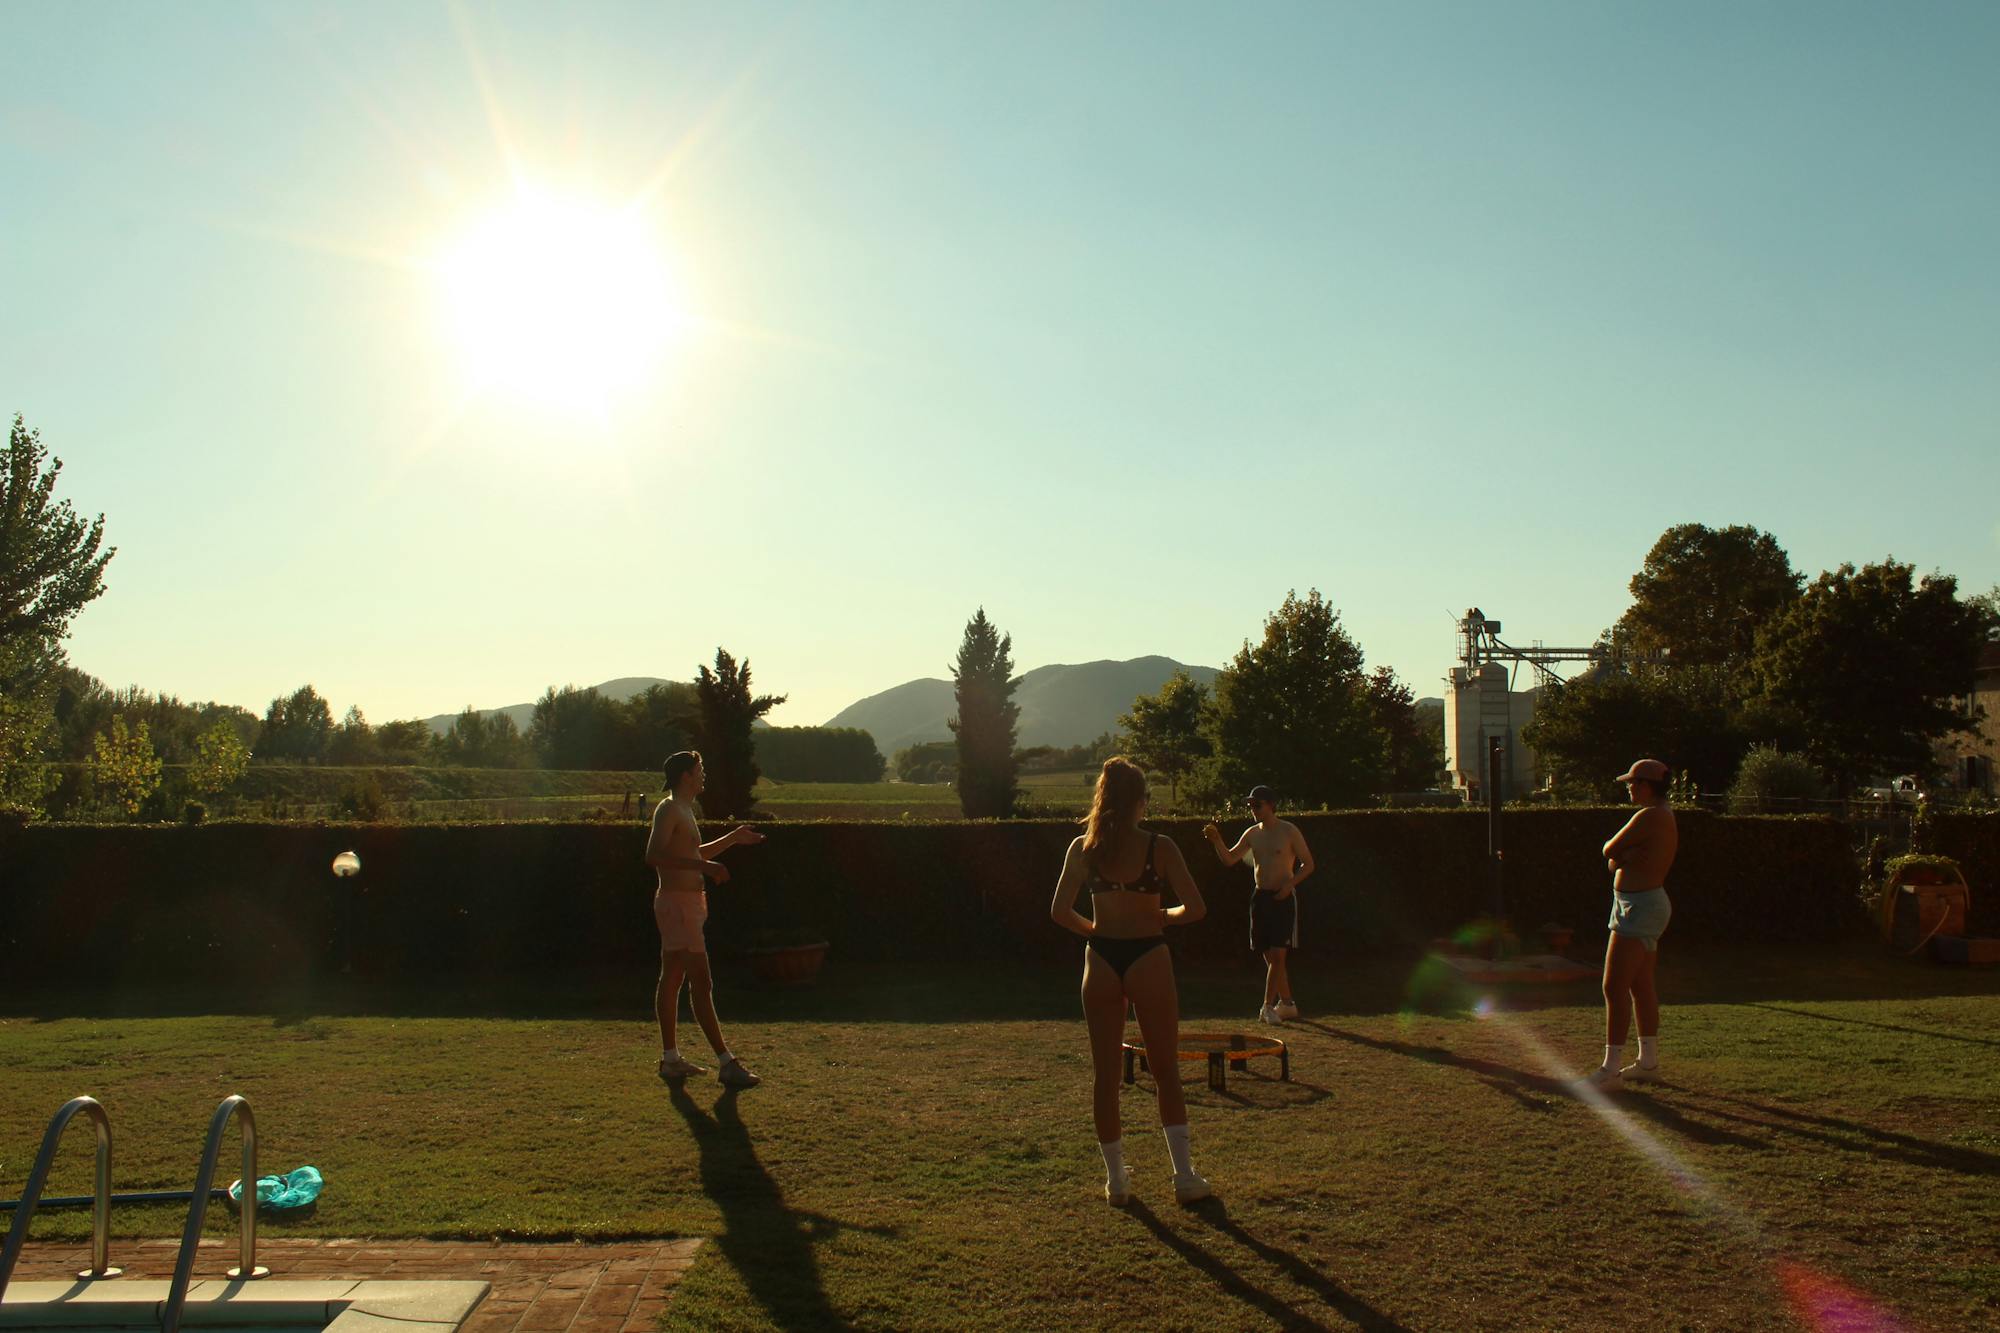 Czterech młodych ludzi wspólnie gra w Spike Ball (grę w piłkę). W tle widoczne są promieniejące słońce oraz krajobraz Toskanii.